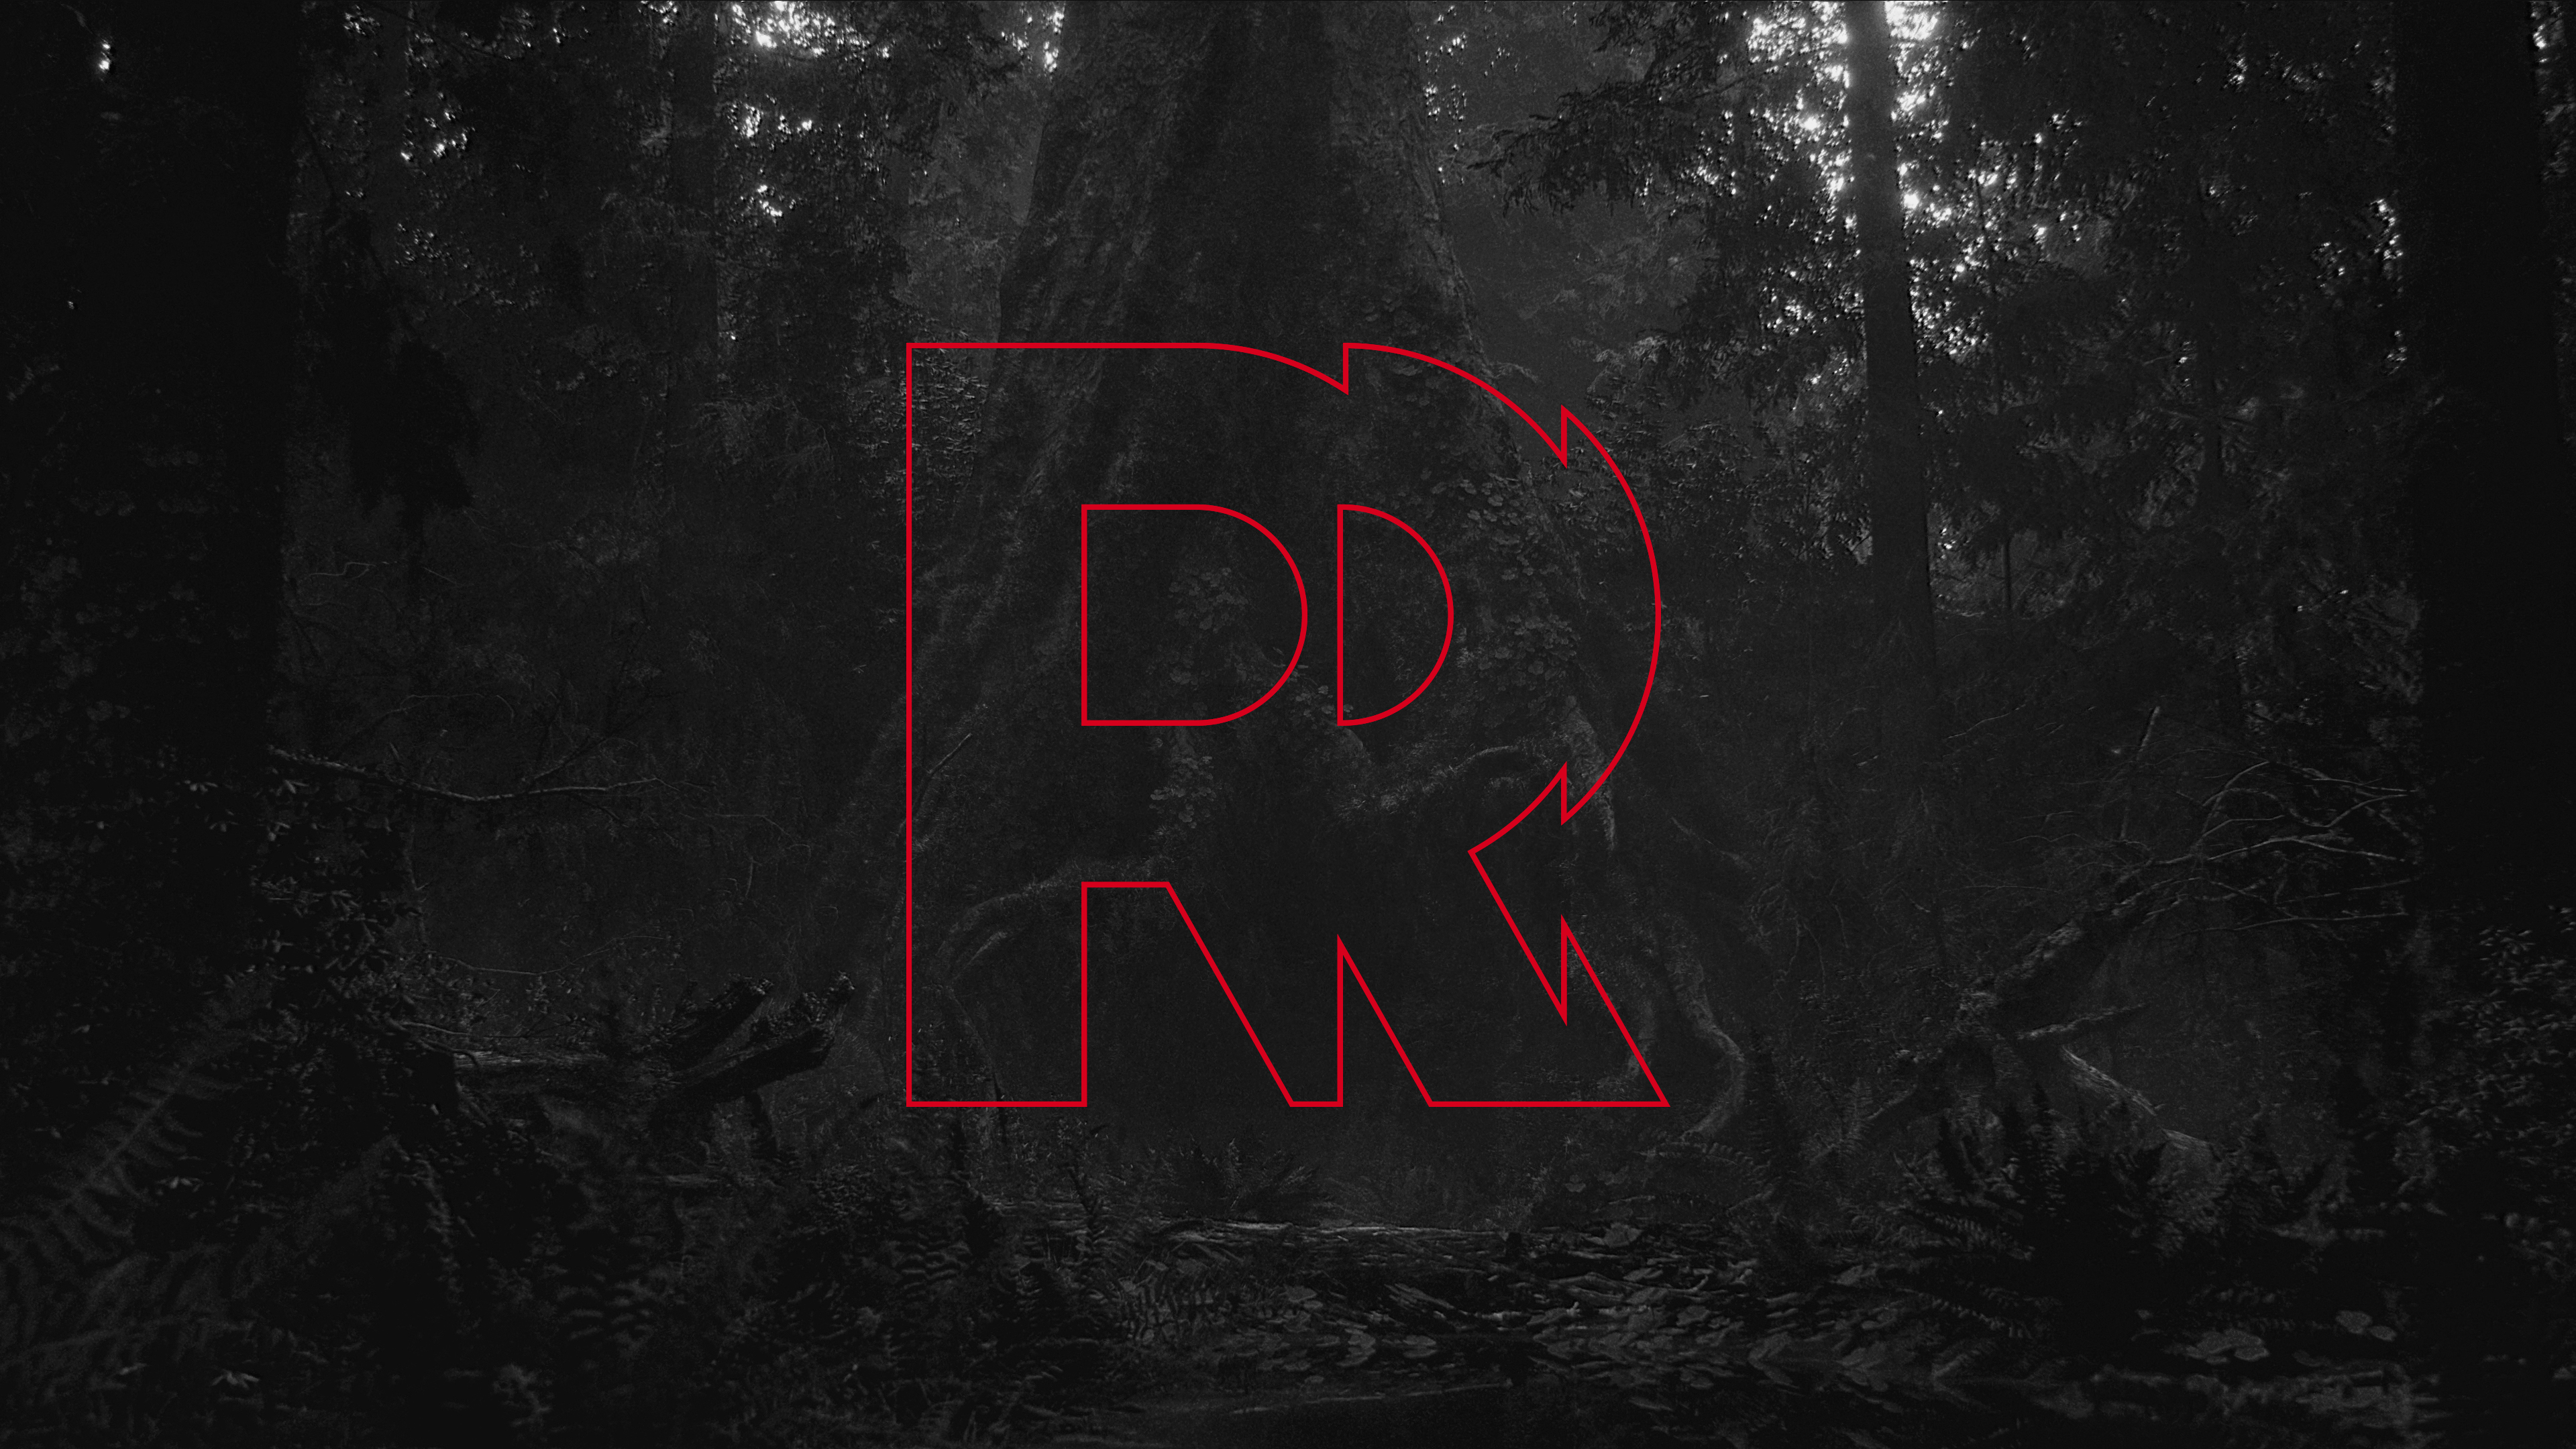 وکلای Take-Two فکر می کنند که لوگوی جدید R Remedy بسیار شبیه به آرم R Rockstar است